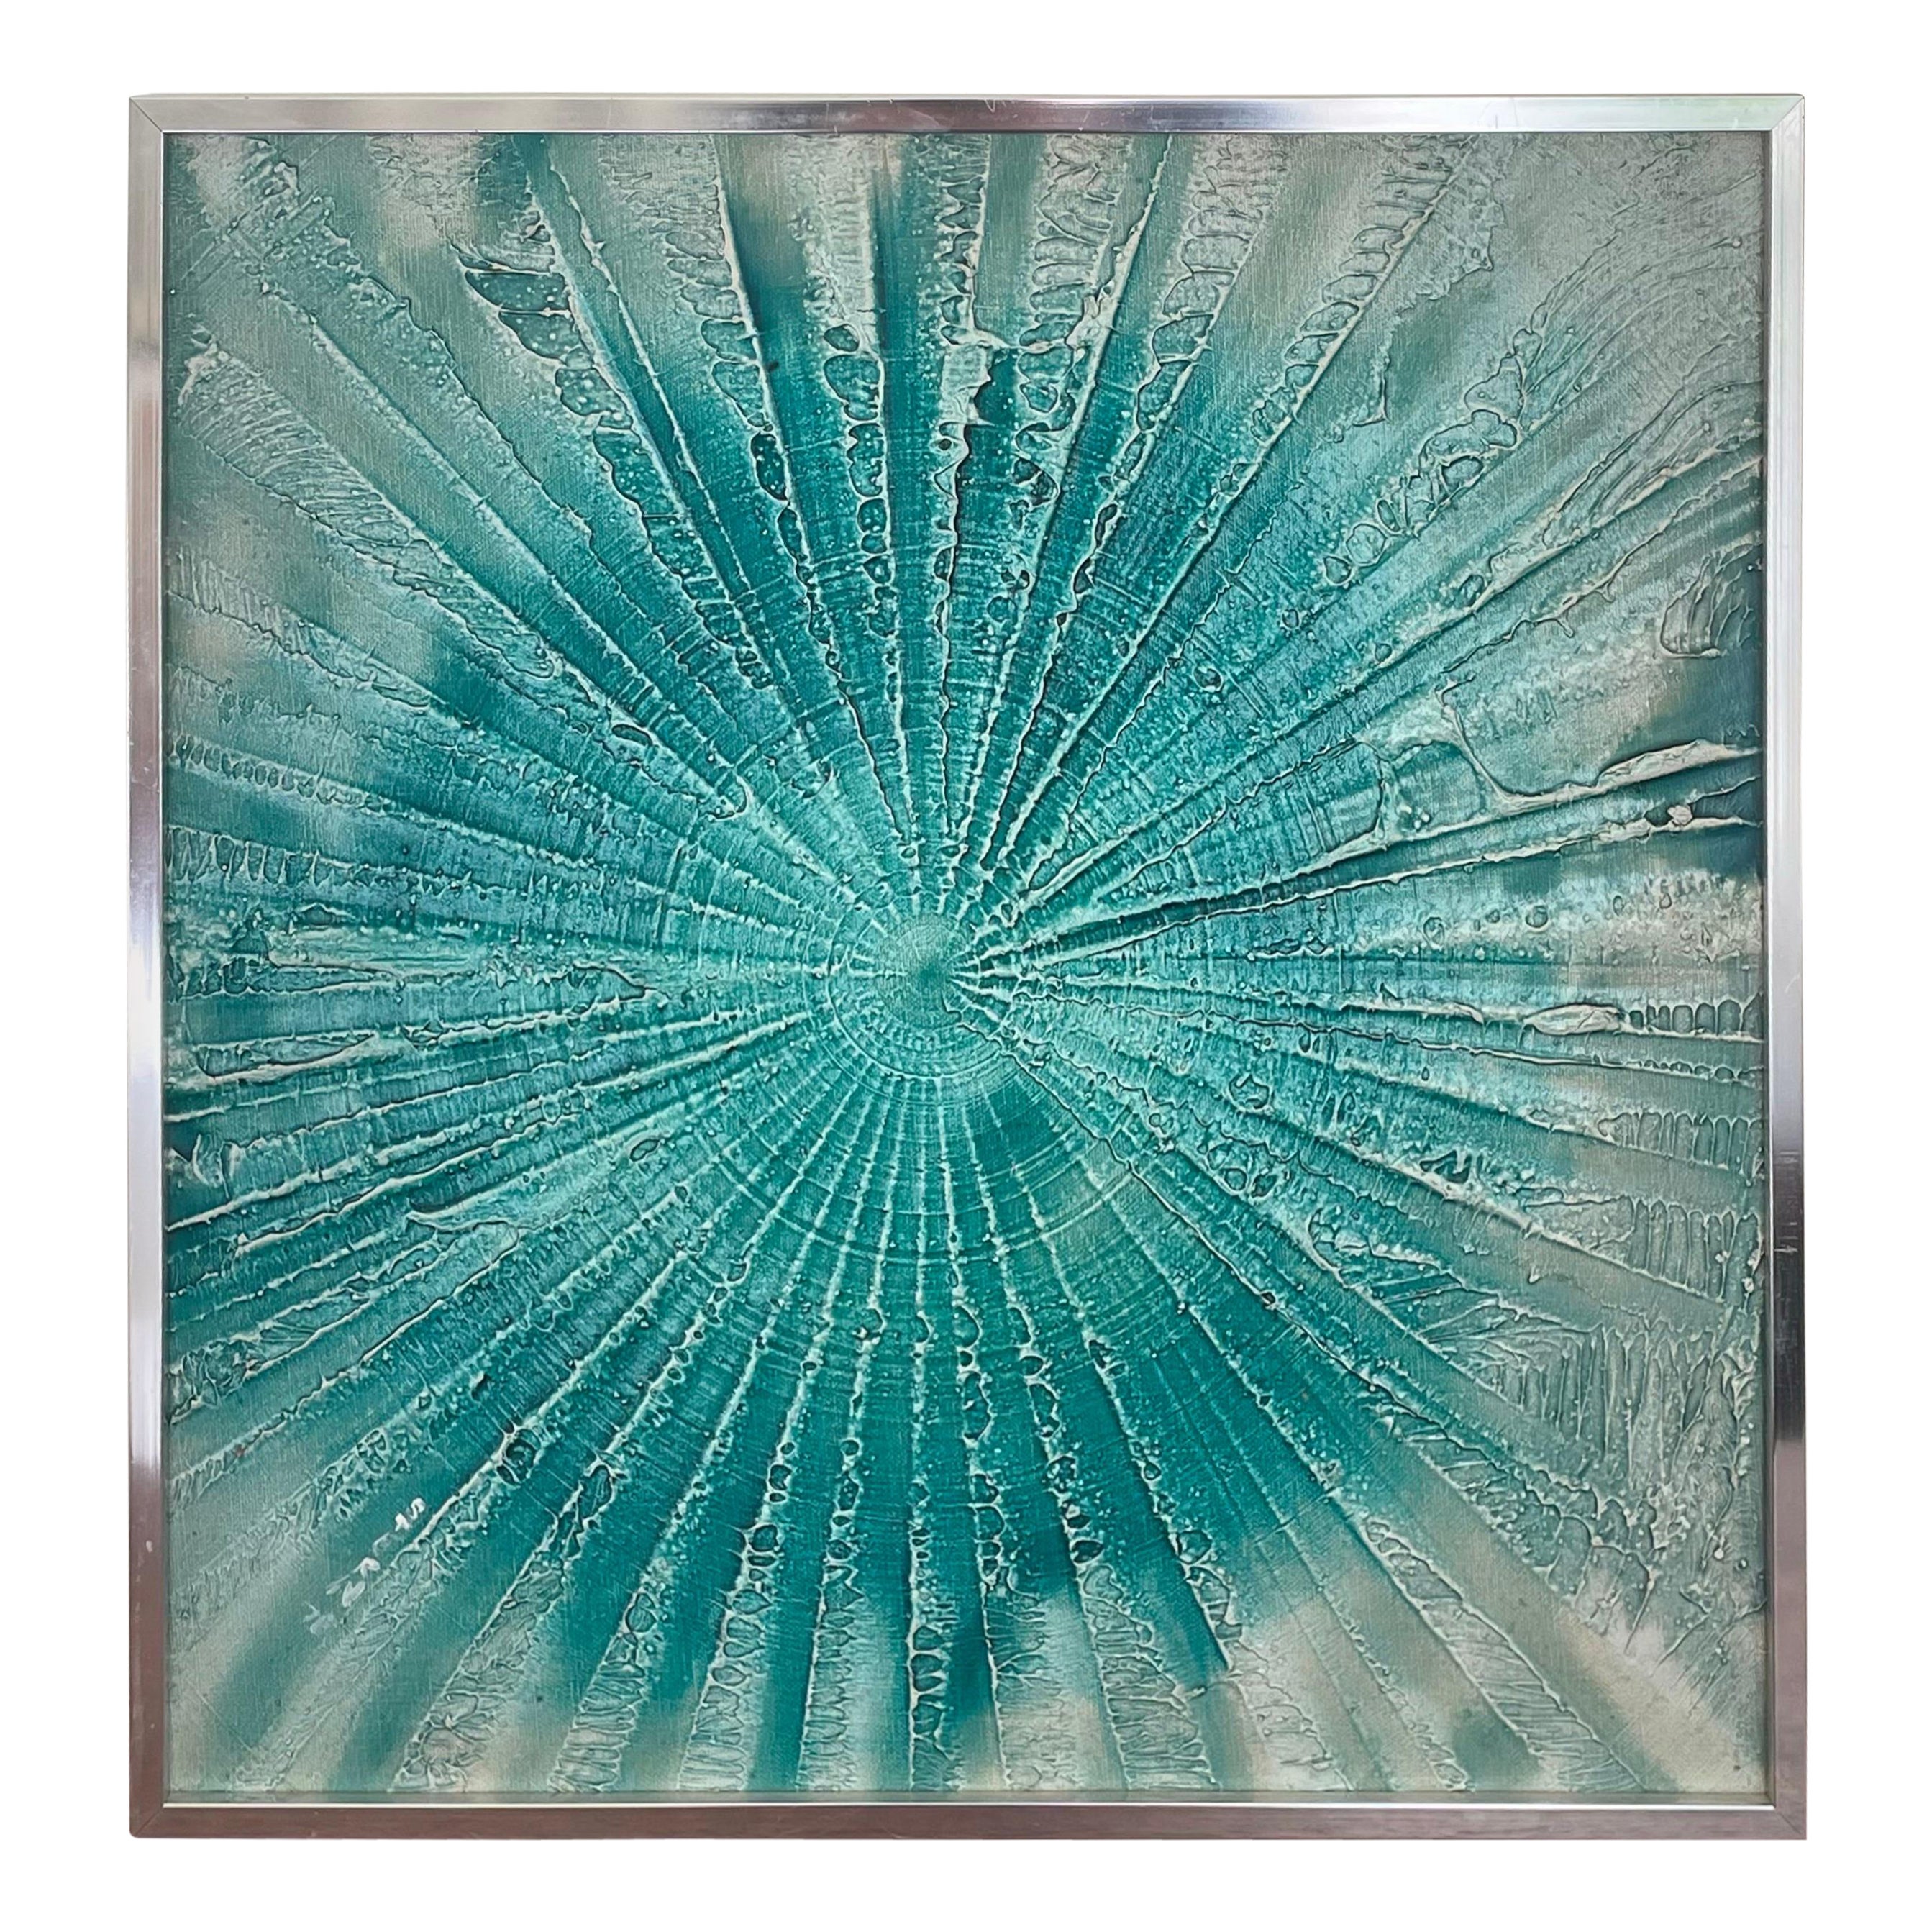 Turquoise du milieu du siècle dernier, Pin Art, peinture acrylique dans le style de Damien Hirst